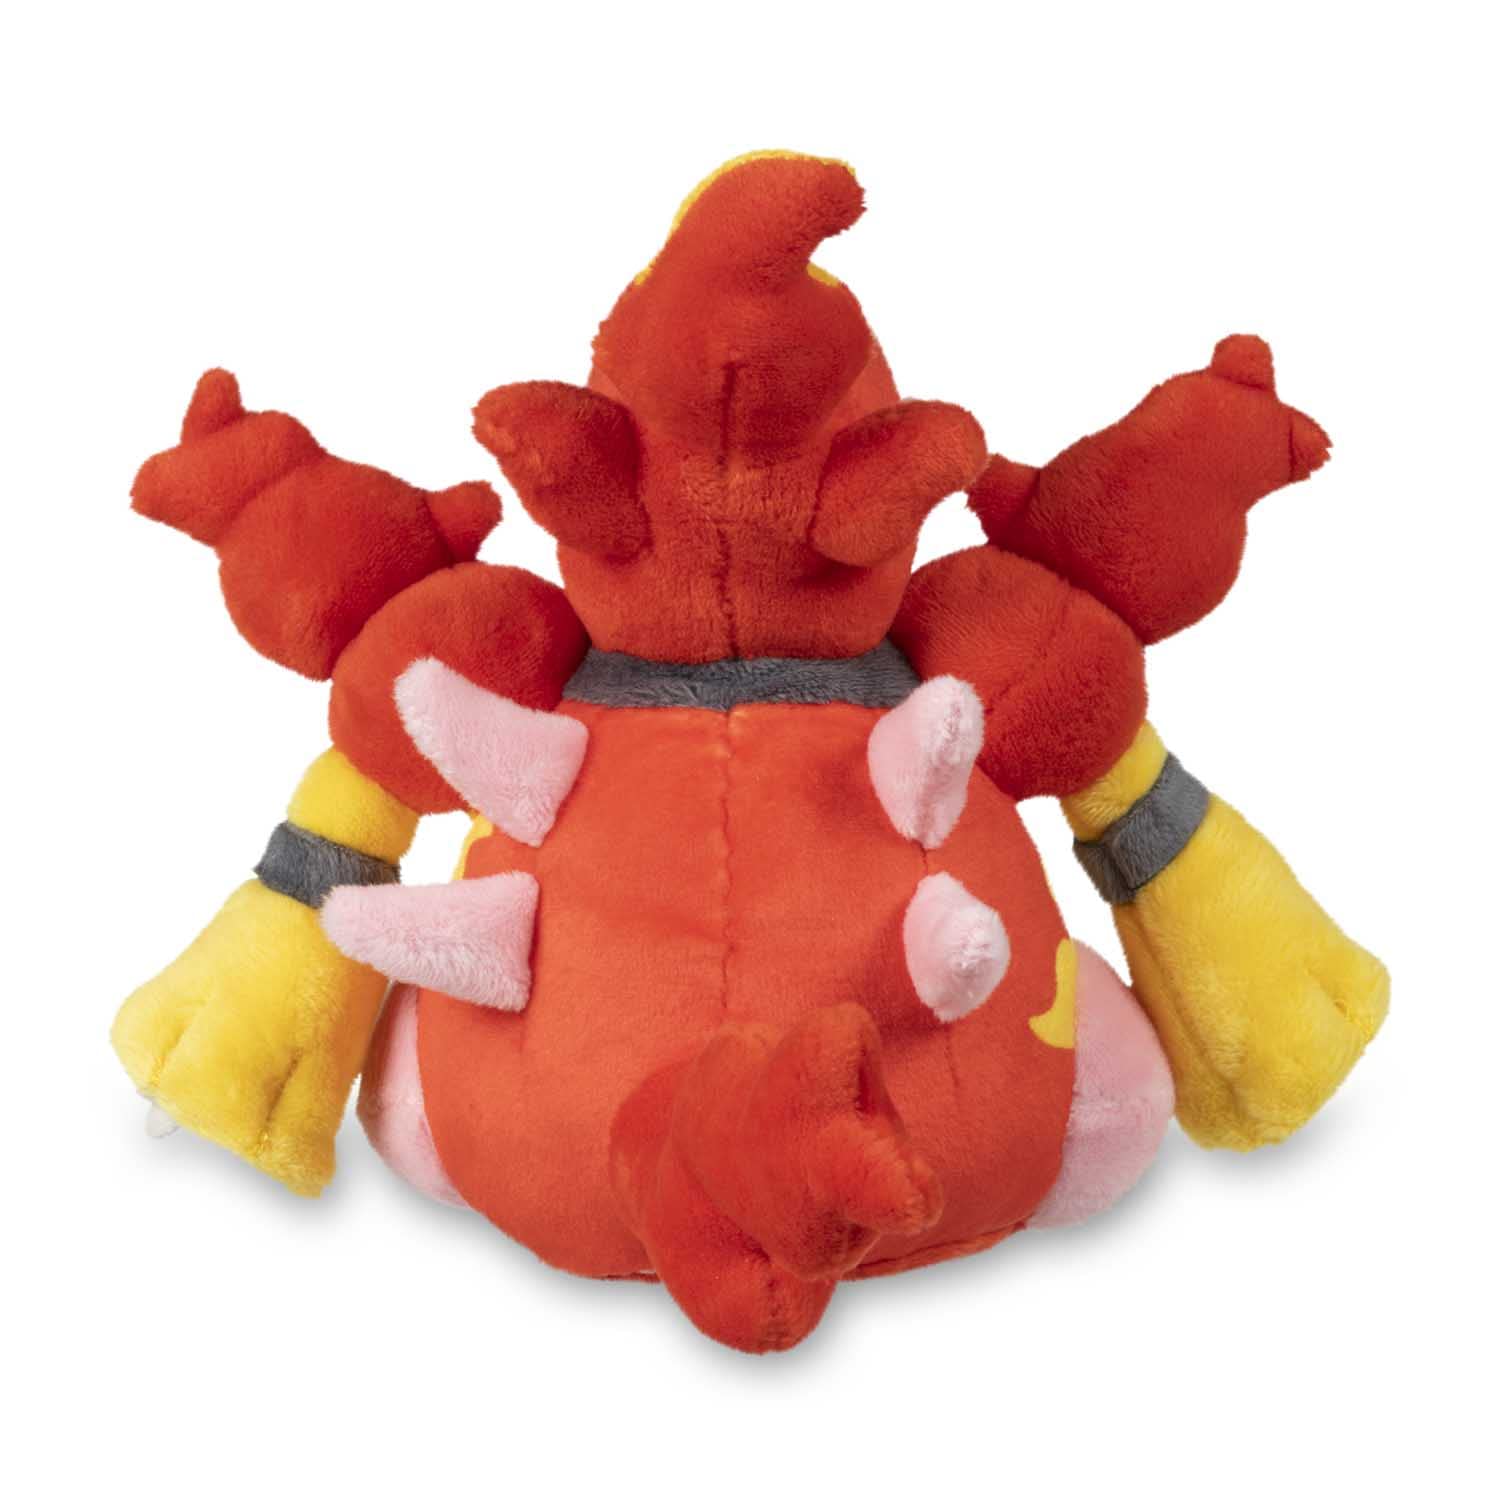  Pokémon Center: Spiritomb Sitting Cuties Plush, 6 ¼